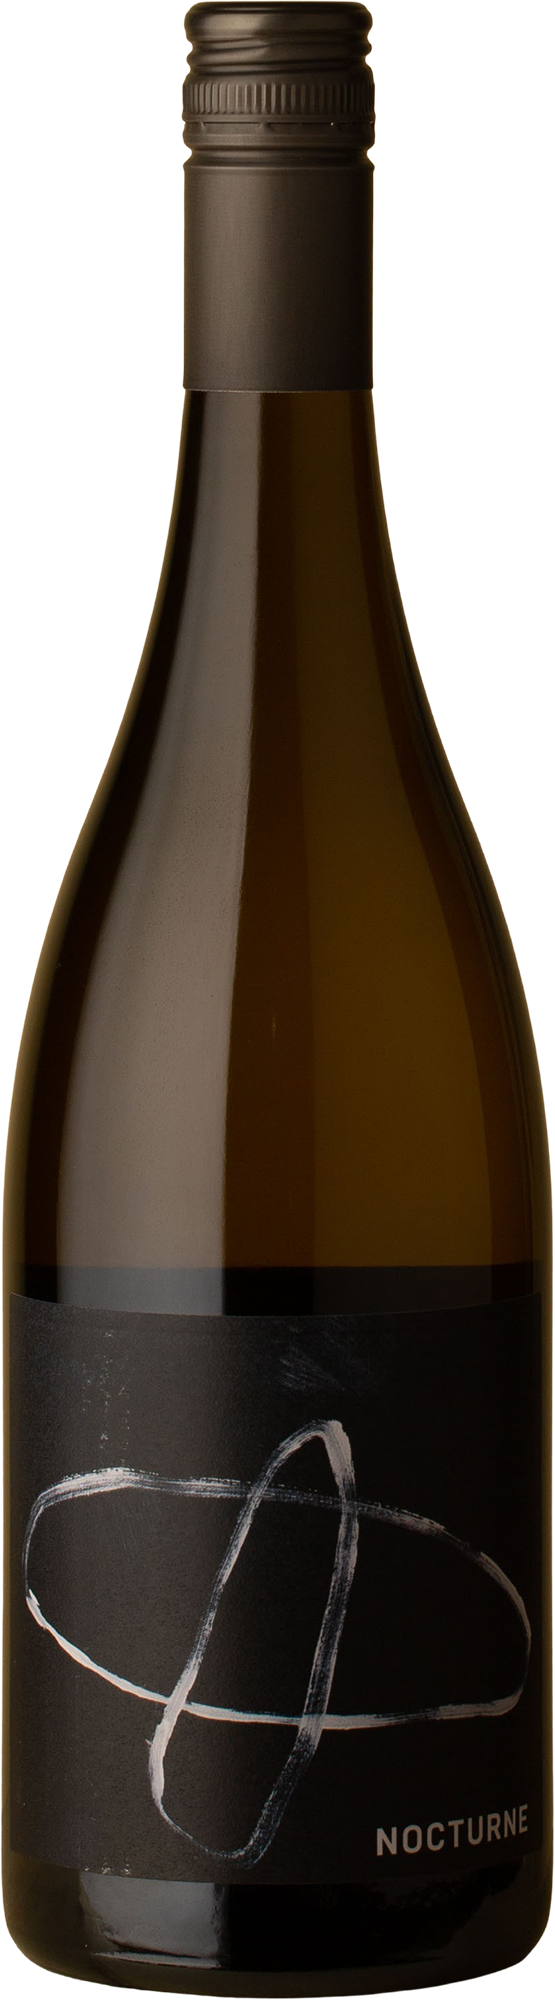 Nocturne - SR Chardonnay 2020 White Wine